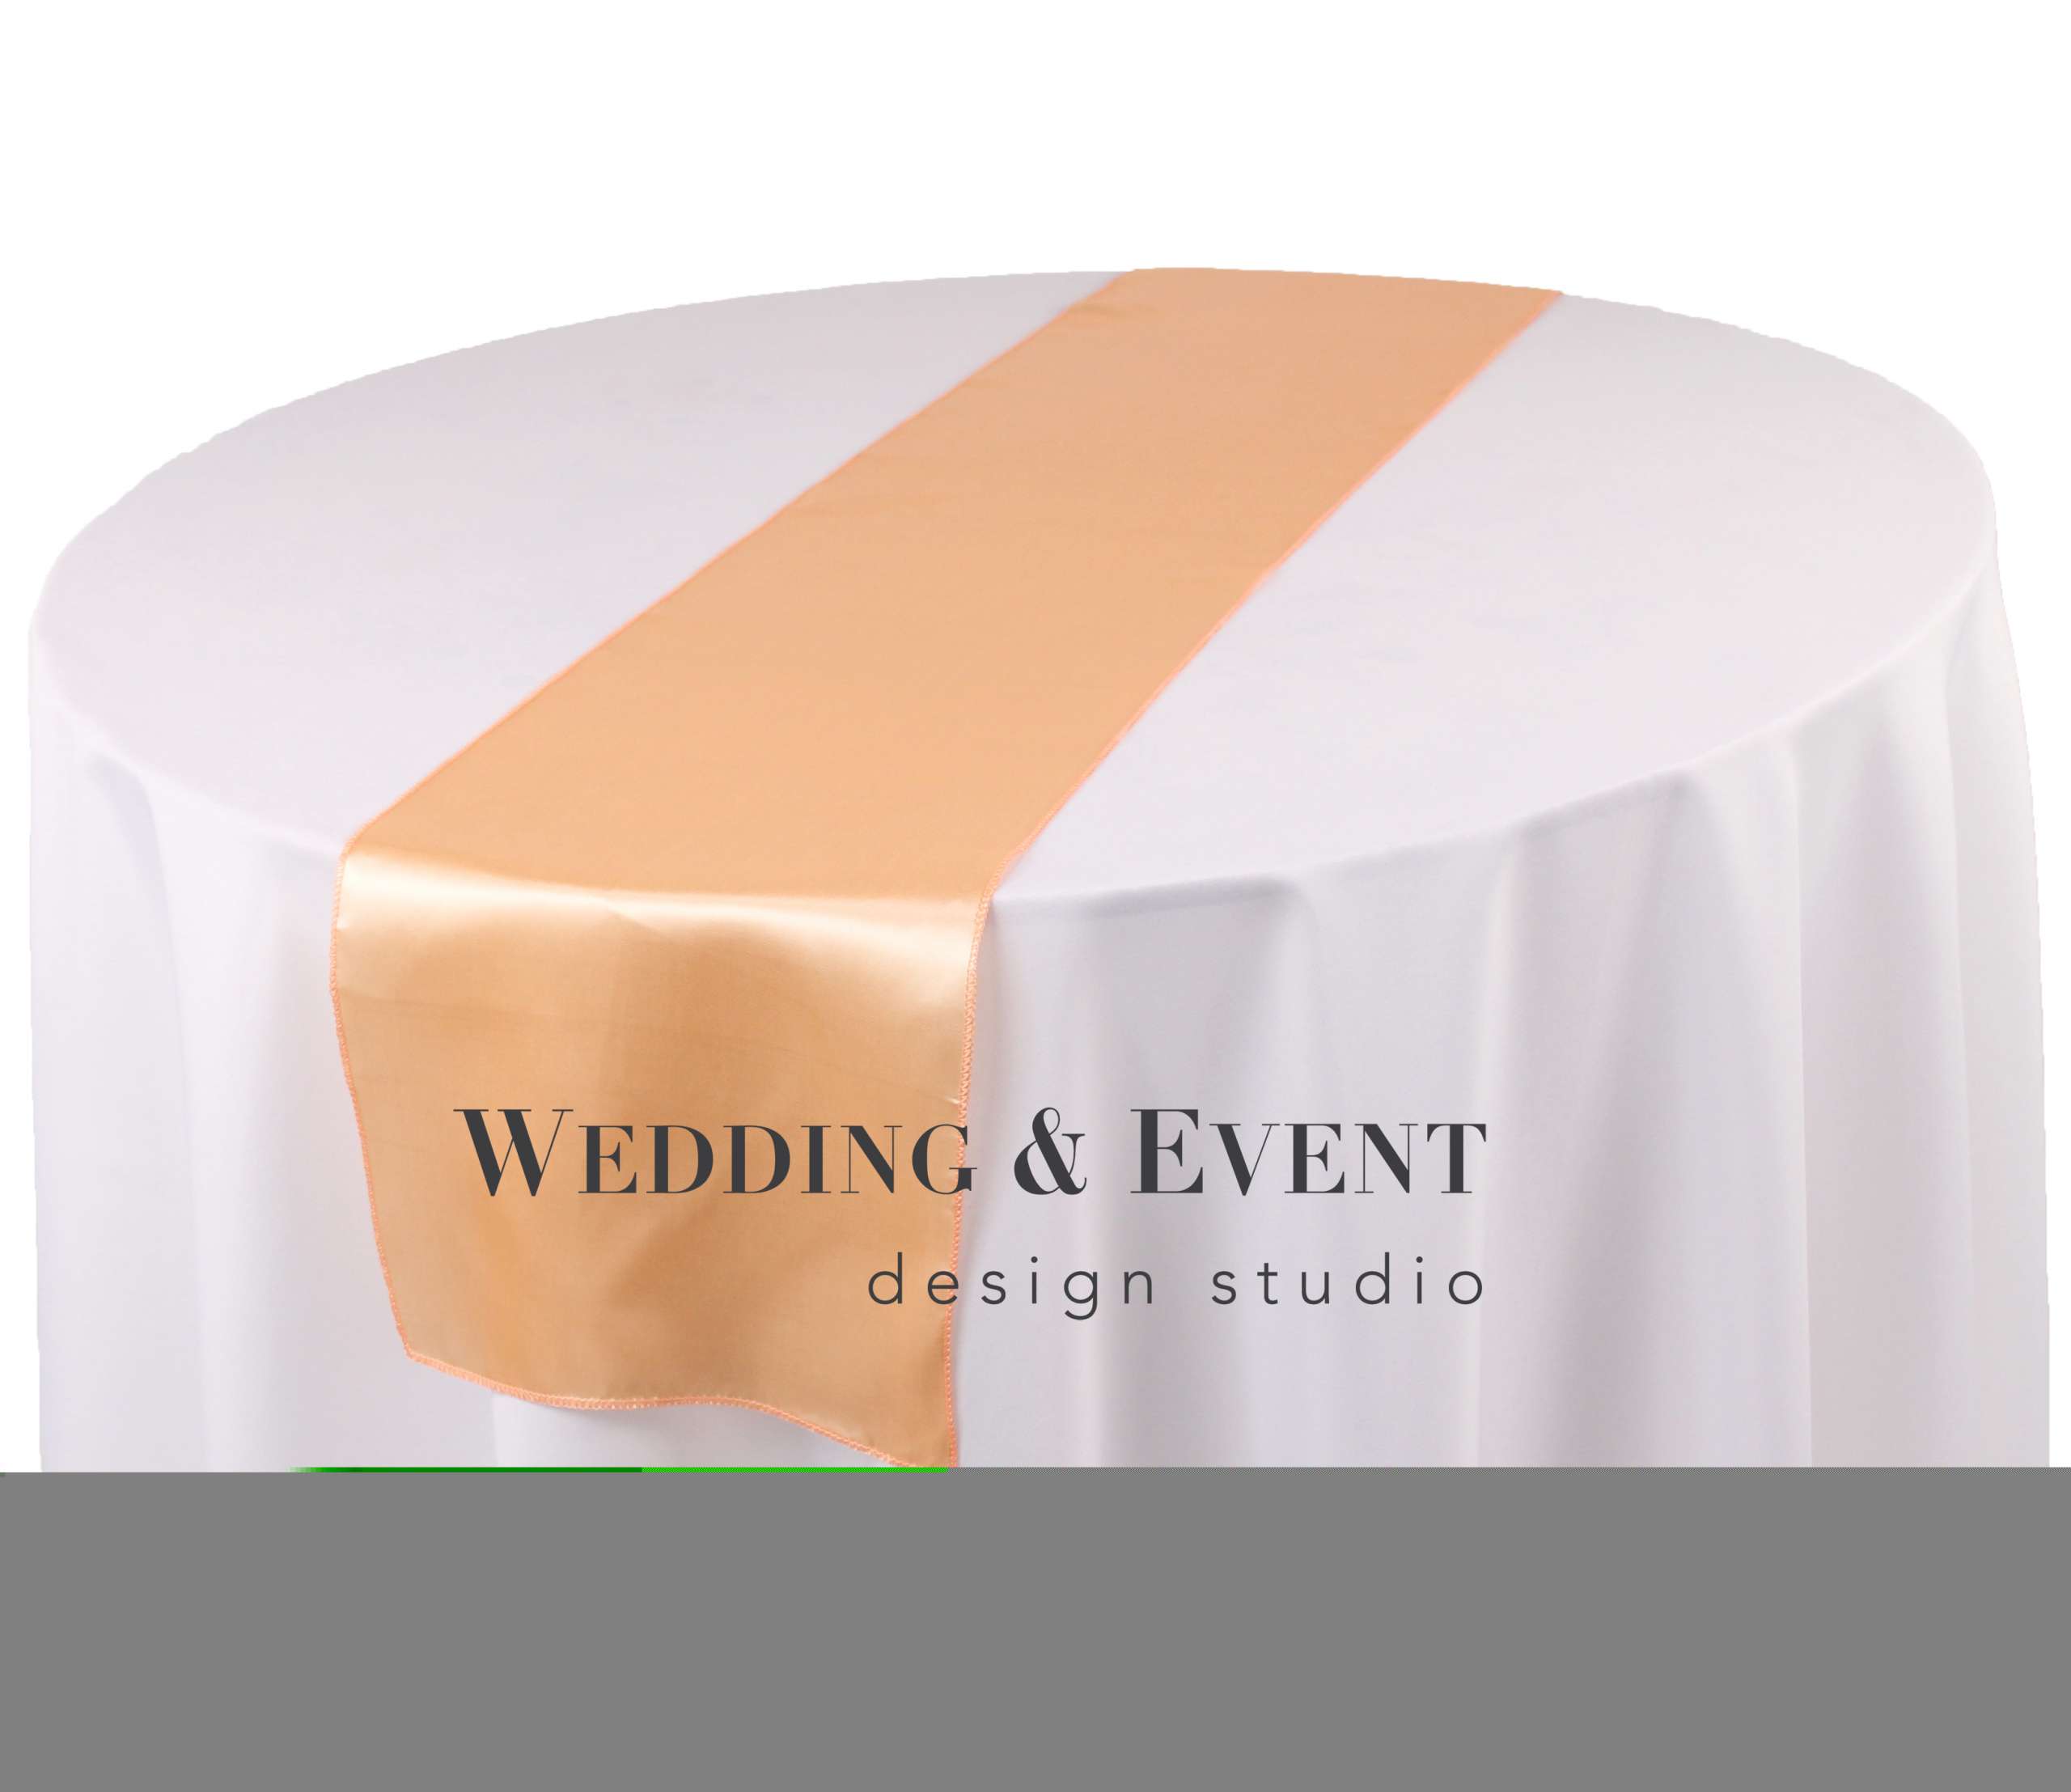 Tischläufer, apricot | Tischläufer | Das Online-Mietportal von & Event Studio Wedding - Design weds4rent